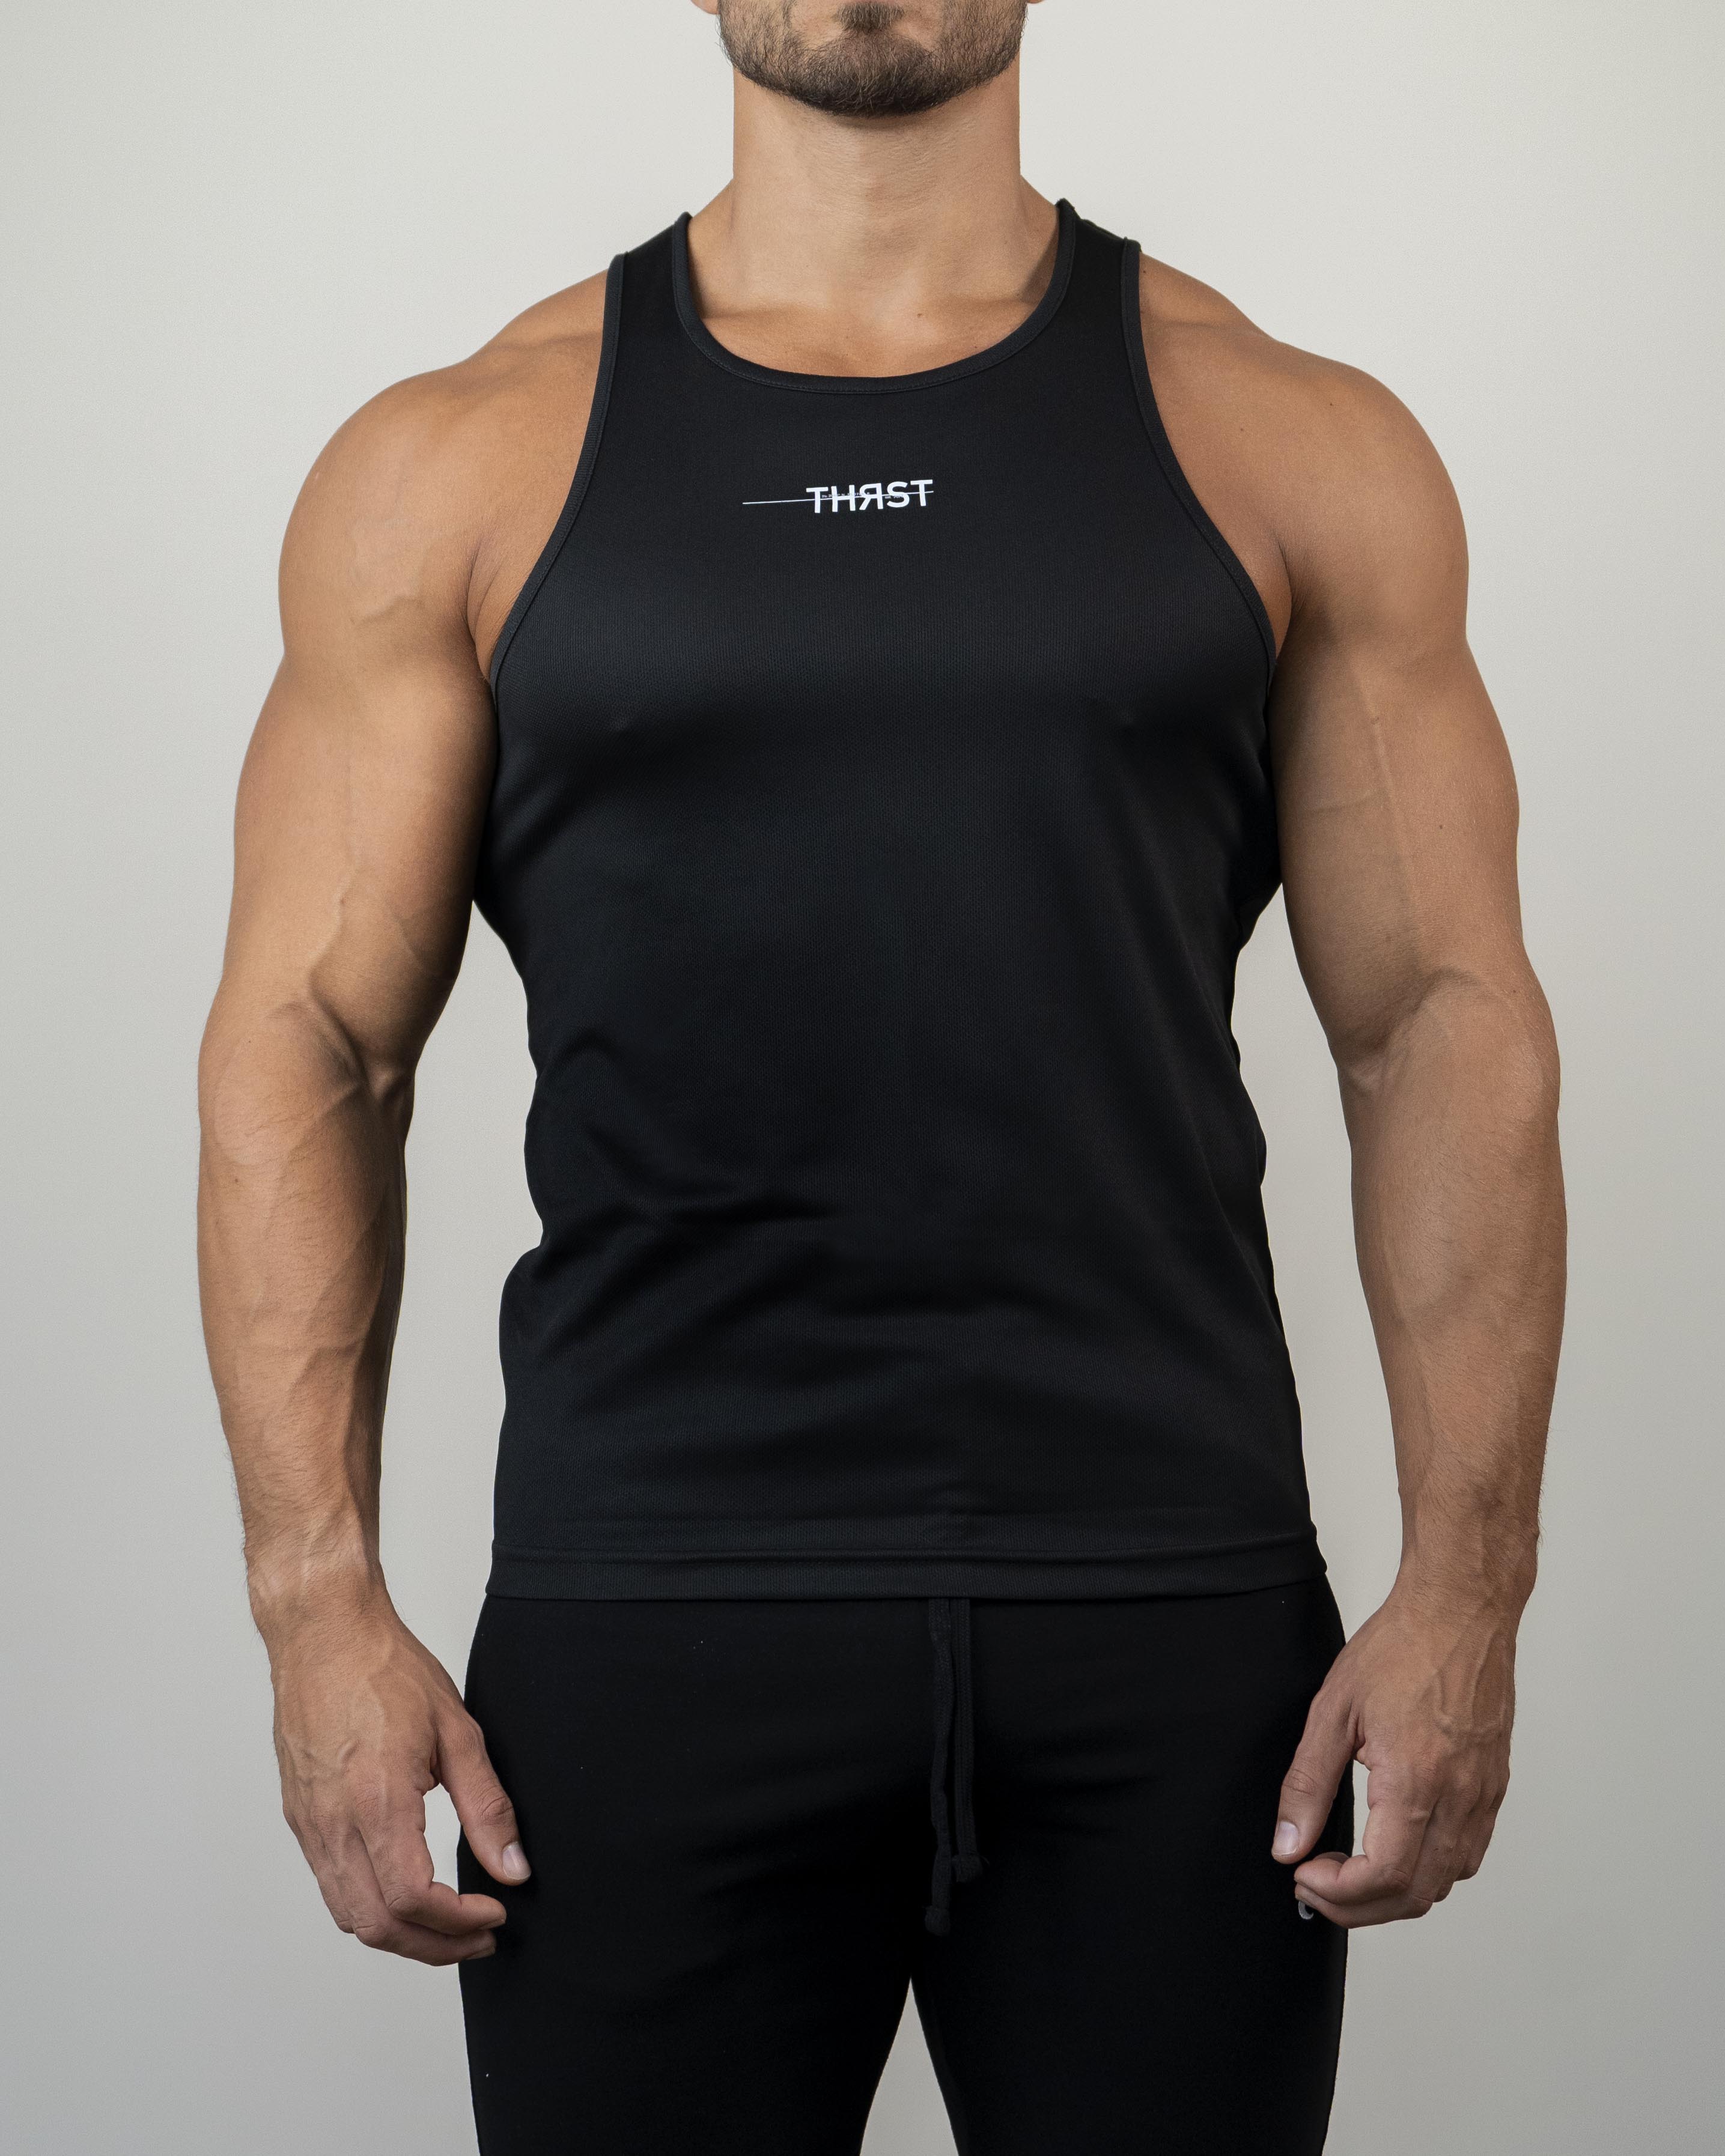 Pack of 3 - Black 100 % Pure Combed Cotton Body Builder Vest / Gym Stringer  vest / top trunk / Black vest